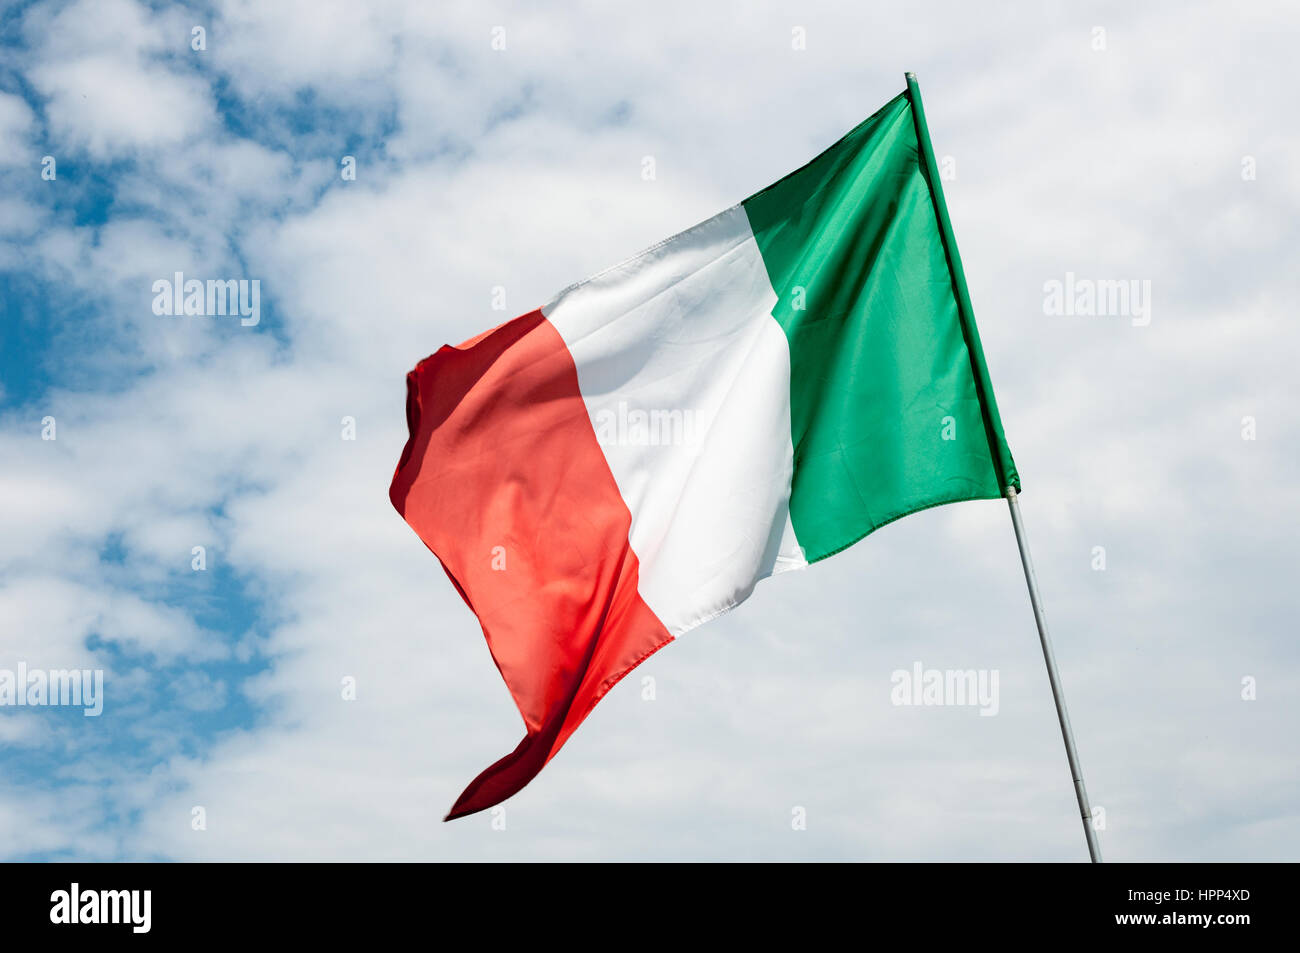 Sventola bandiera italiana contro il cielo nuvoloso Foto Stock